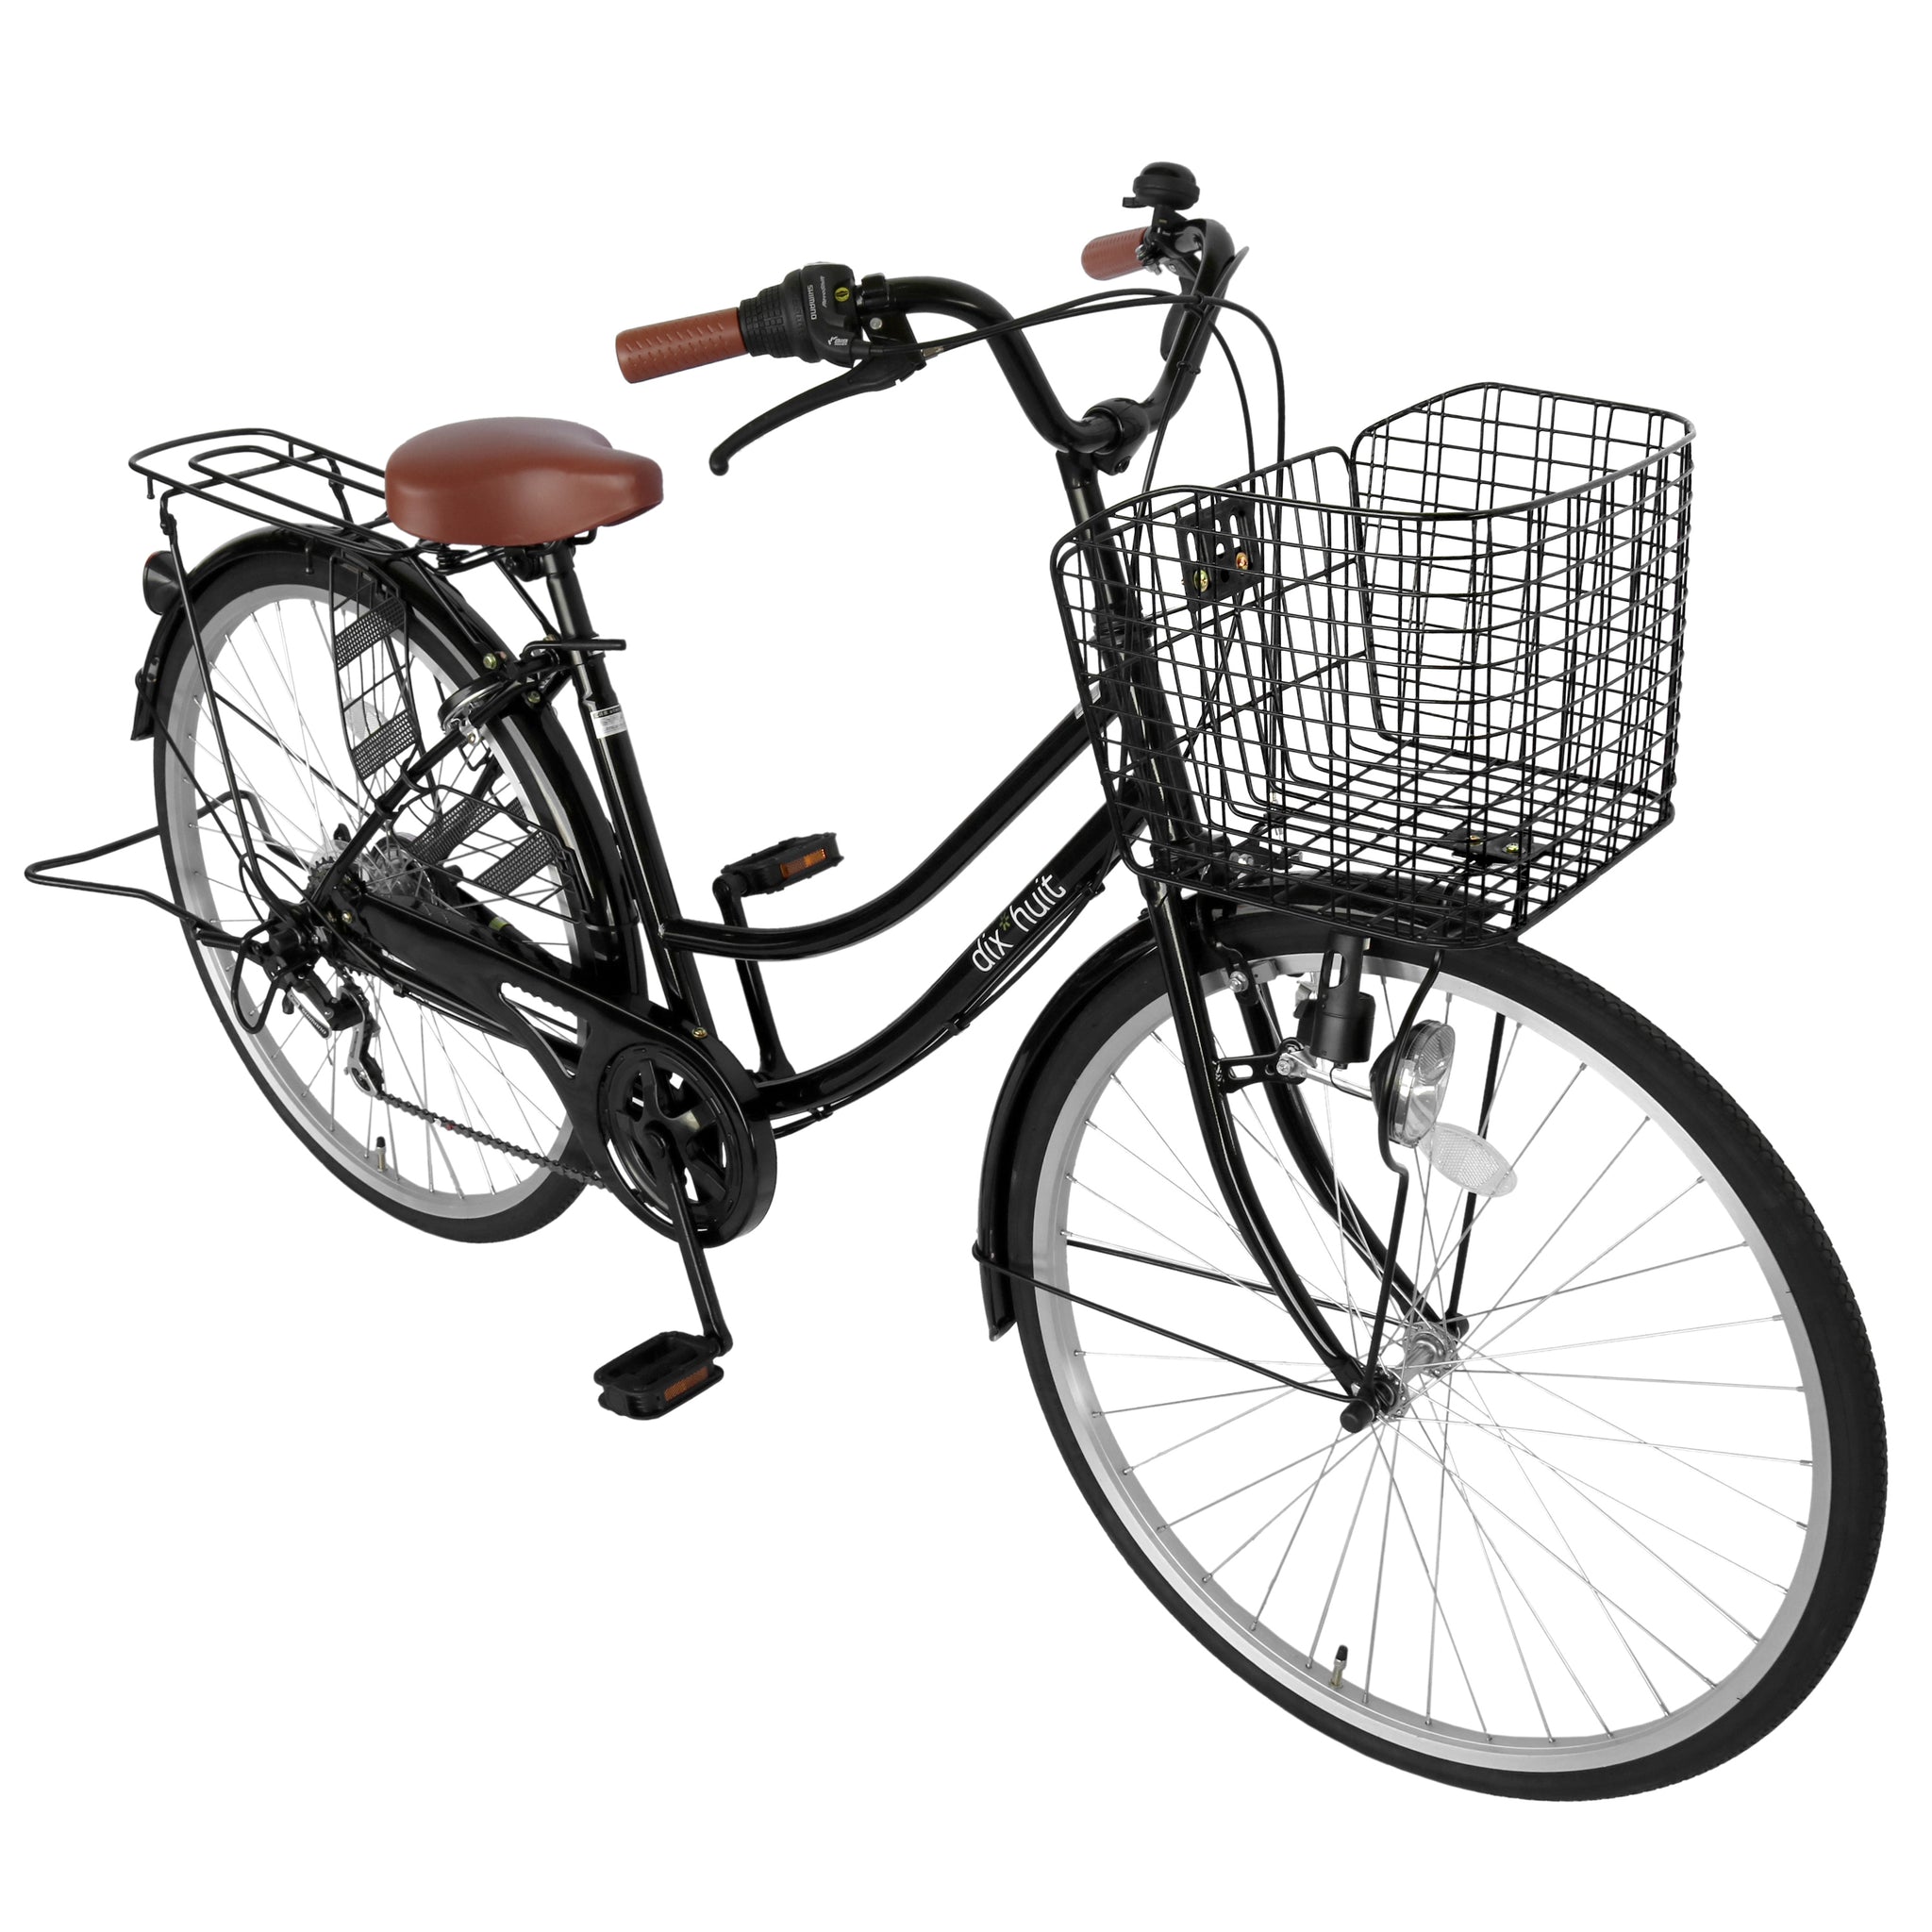 自転車 デザインフレームで人気 サントラスト ママチャリ 軽快車 ママチャリ 自転車 ブラック Dixhuit 6段変速ギアフレーム 26イ 自転車 通販のゴーゴーサイクリング